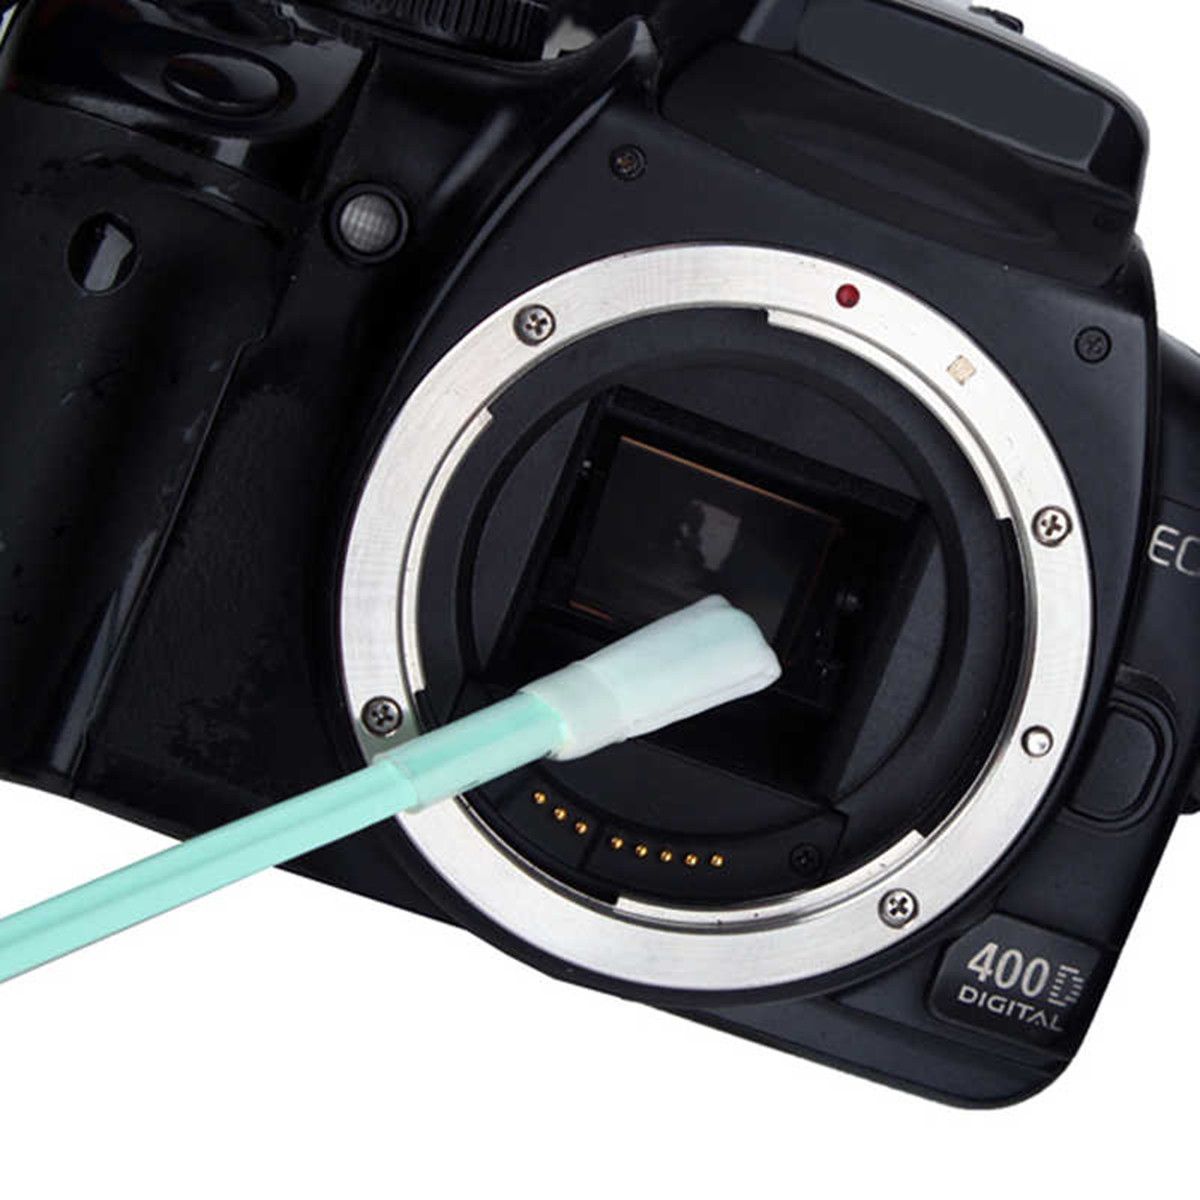 6Pcs-Wet-Sensor-Lens-Cleaning-Stick-CMOS-CCD-Cleaner-Swab-For-Camera-DSLR-SLR-1427513